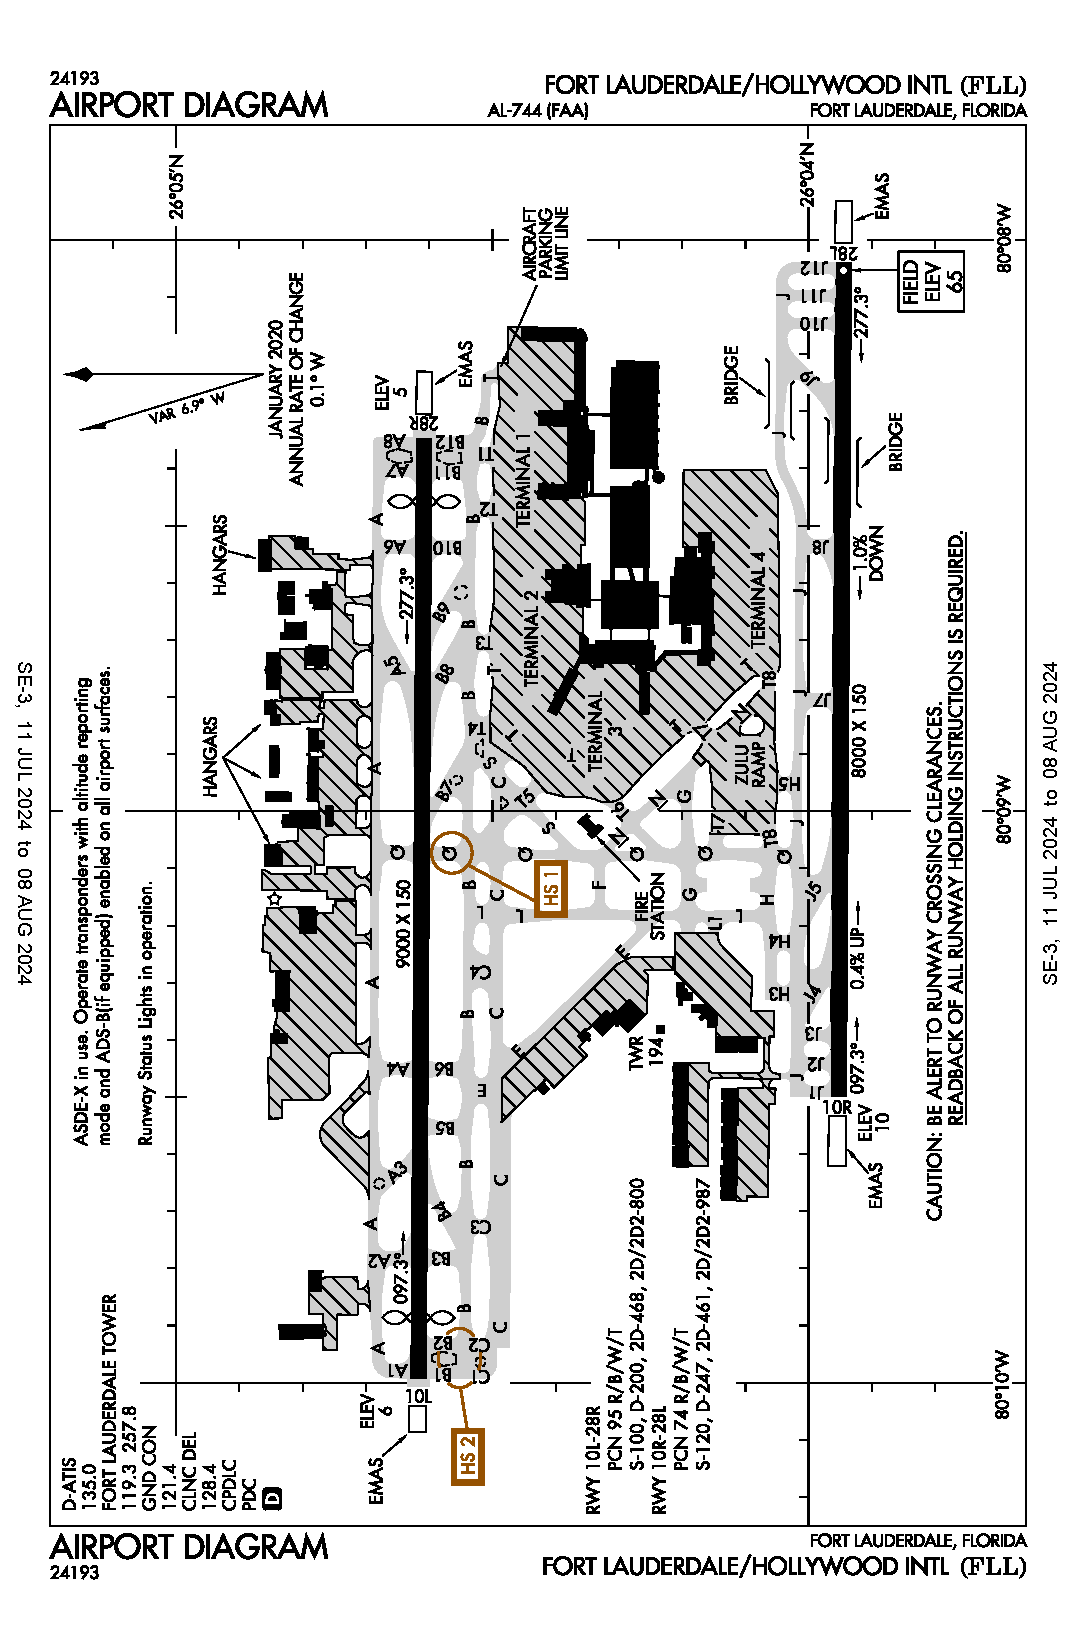 Airport Diagram.png